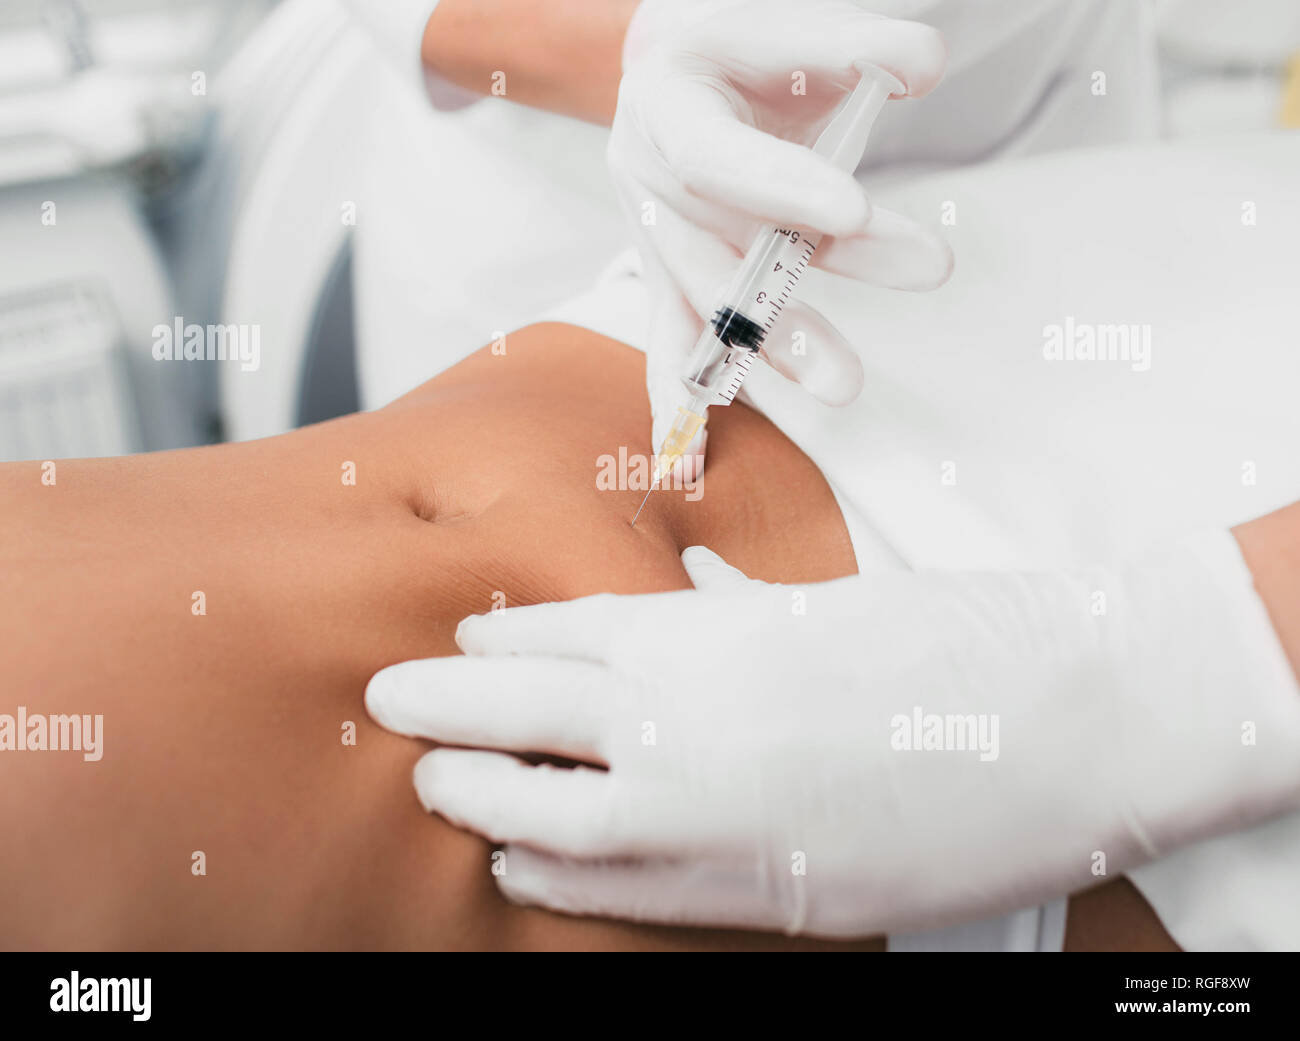 Injection dans le ventre des femmes, la mésothérapie. Offre d'enlever la cellulite sur l'abdomen à l'aide d'injections de beauté. Banque D'Images